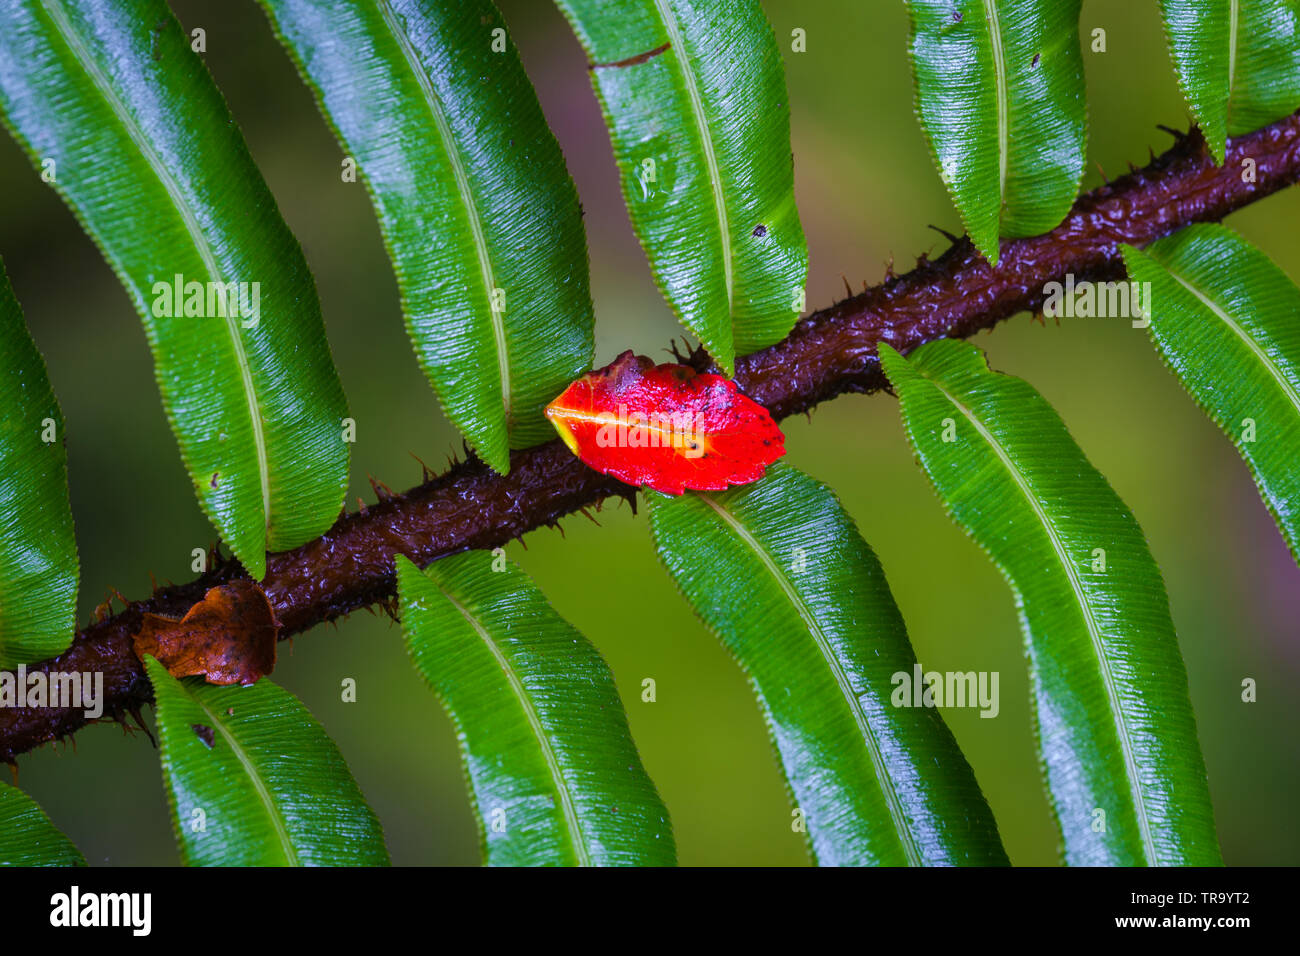 La feuille rouge sur une branche dans le sous-bois de la cloudforest de parc national La Amistad, hautes terres de l'ouest, province de Chiriqui, Republivc du Panama. Banque D'Images